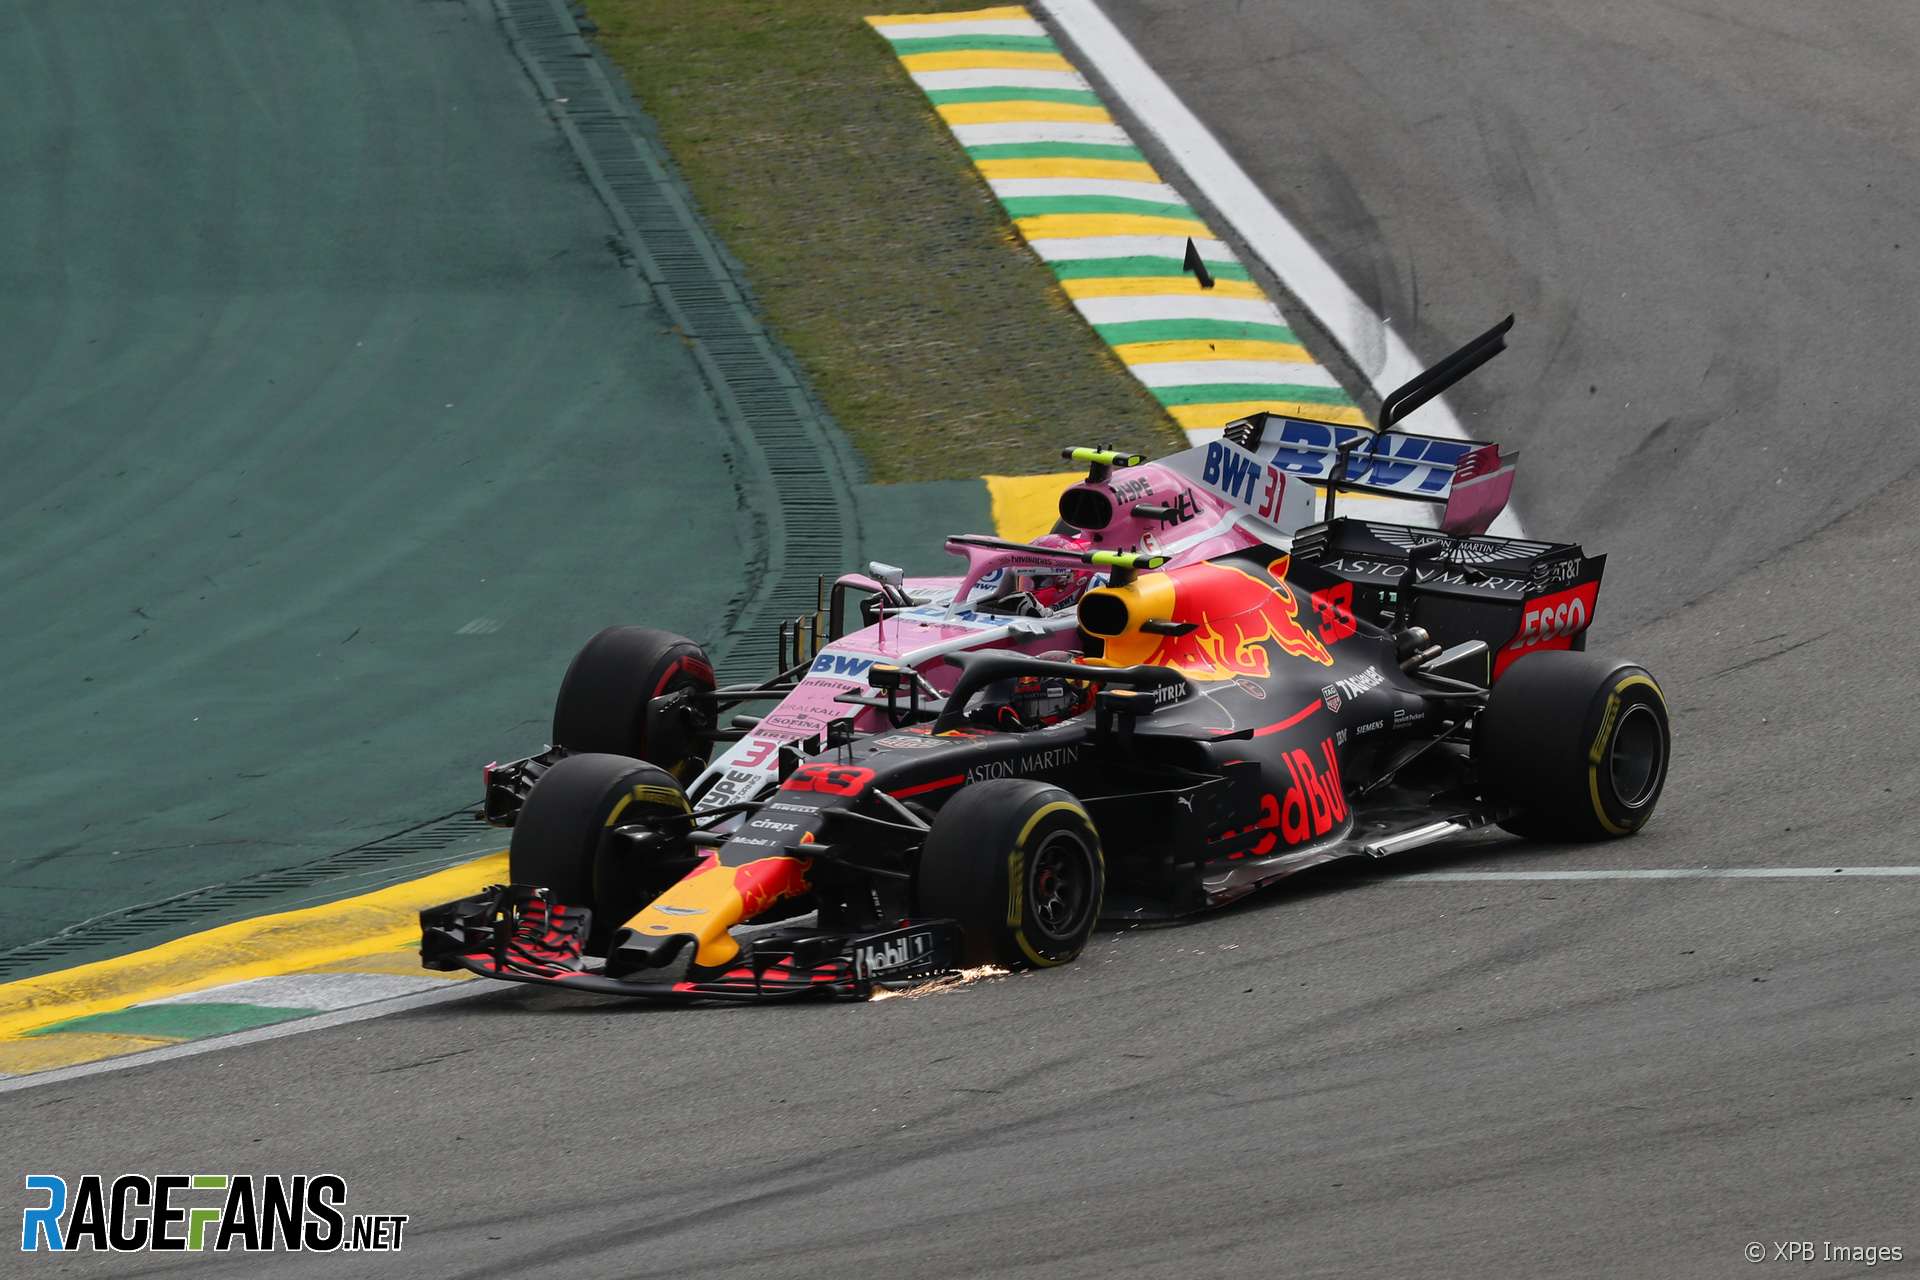 Max Verstappen, Esteban Ocon, Interlagos, 2018